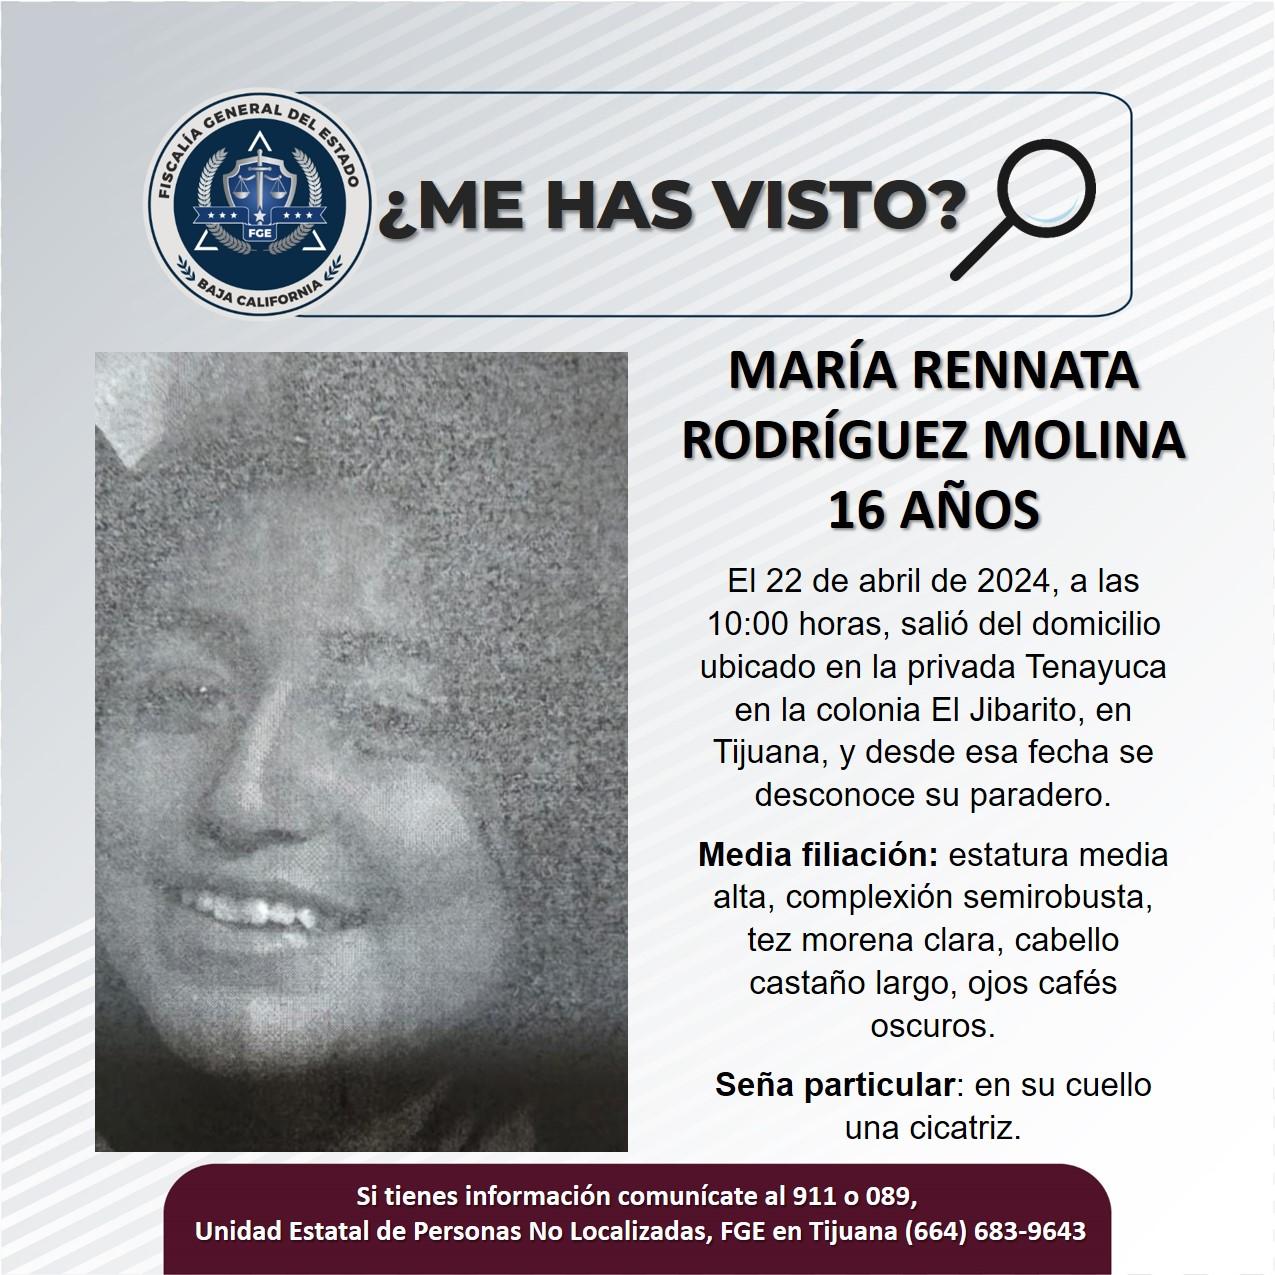 Servicio social: Se busca a María Rennata Rodríguez Molina de 16 años de edad